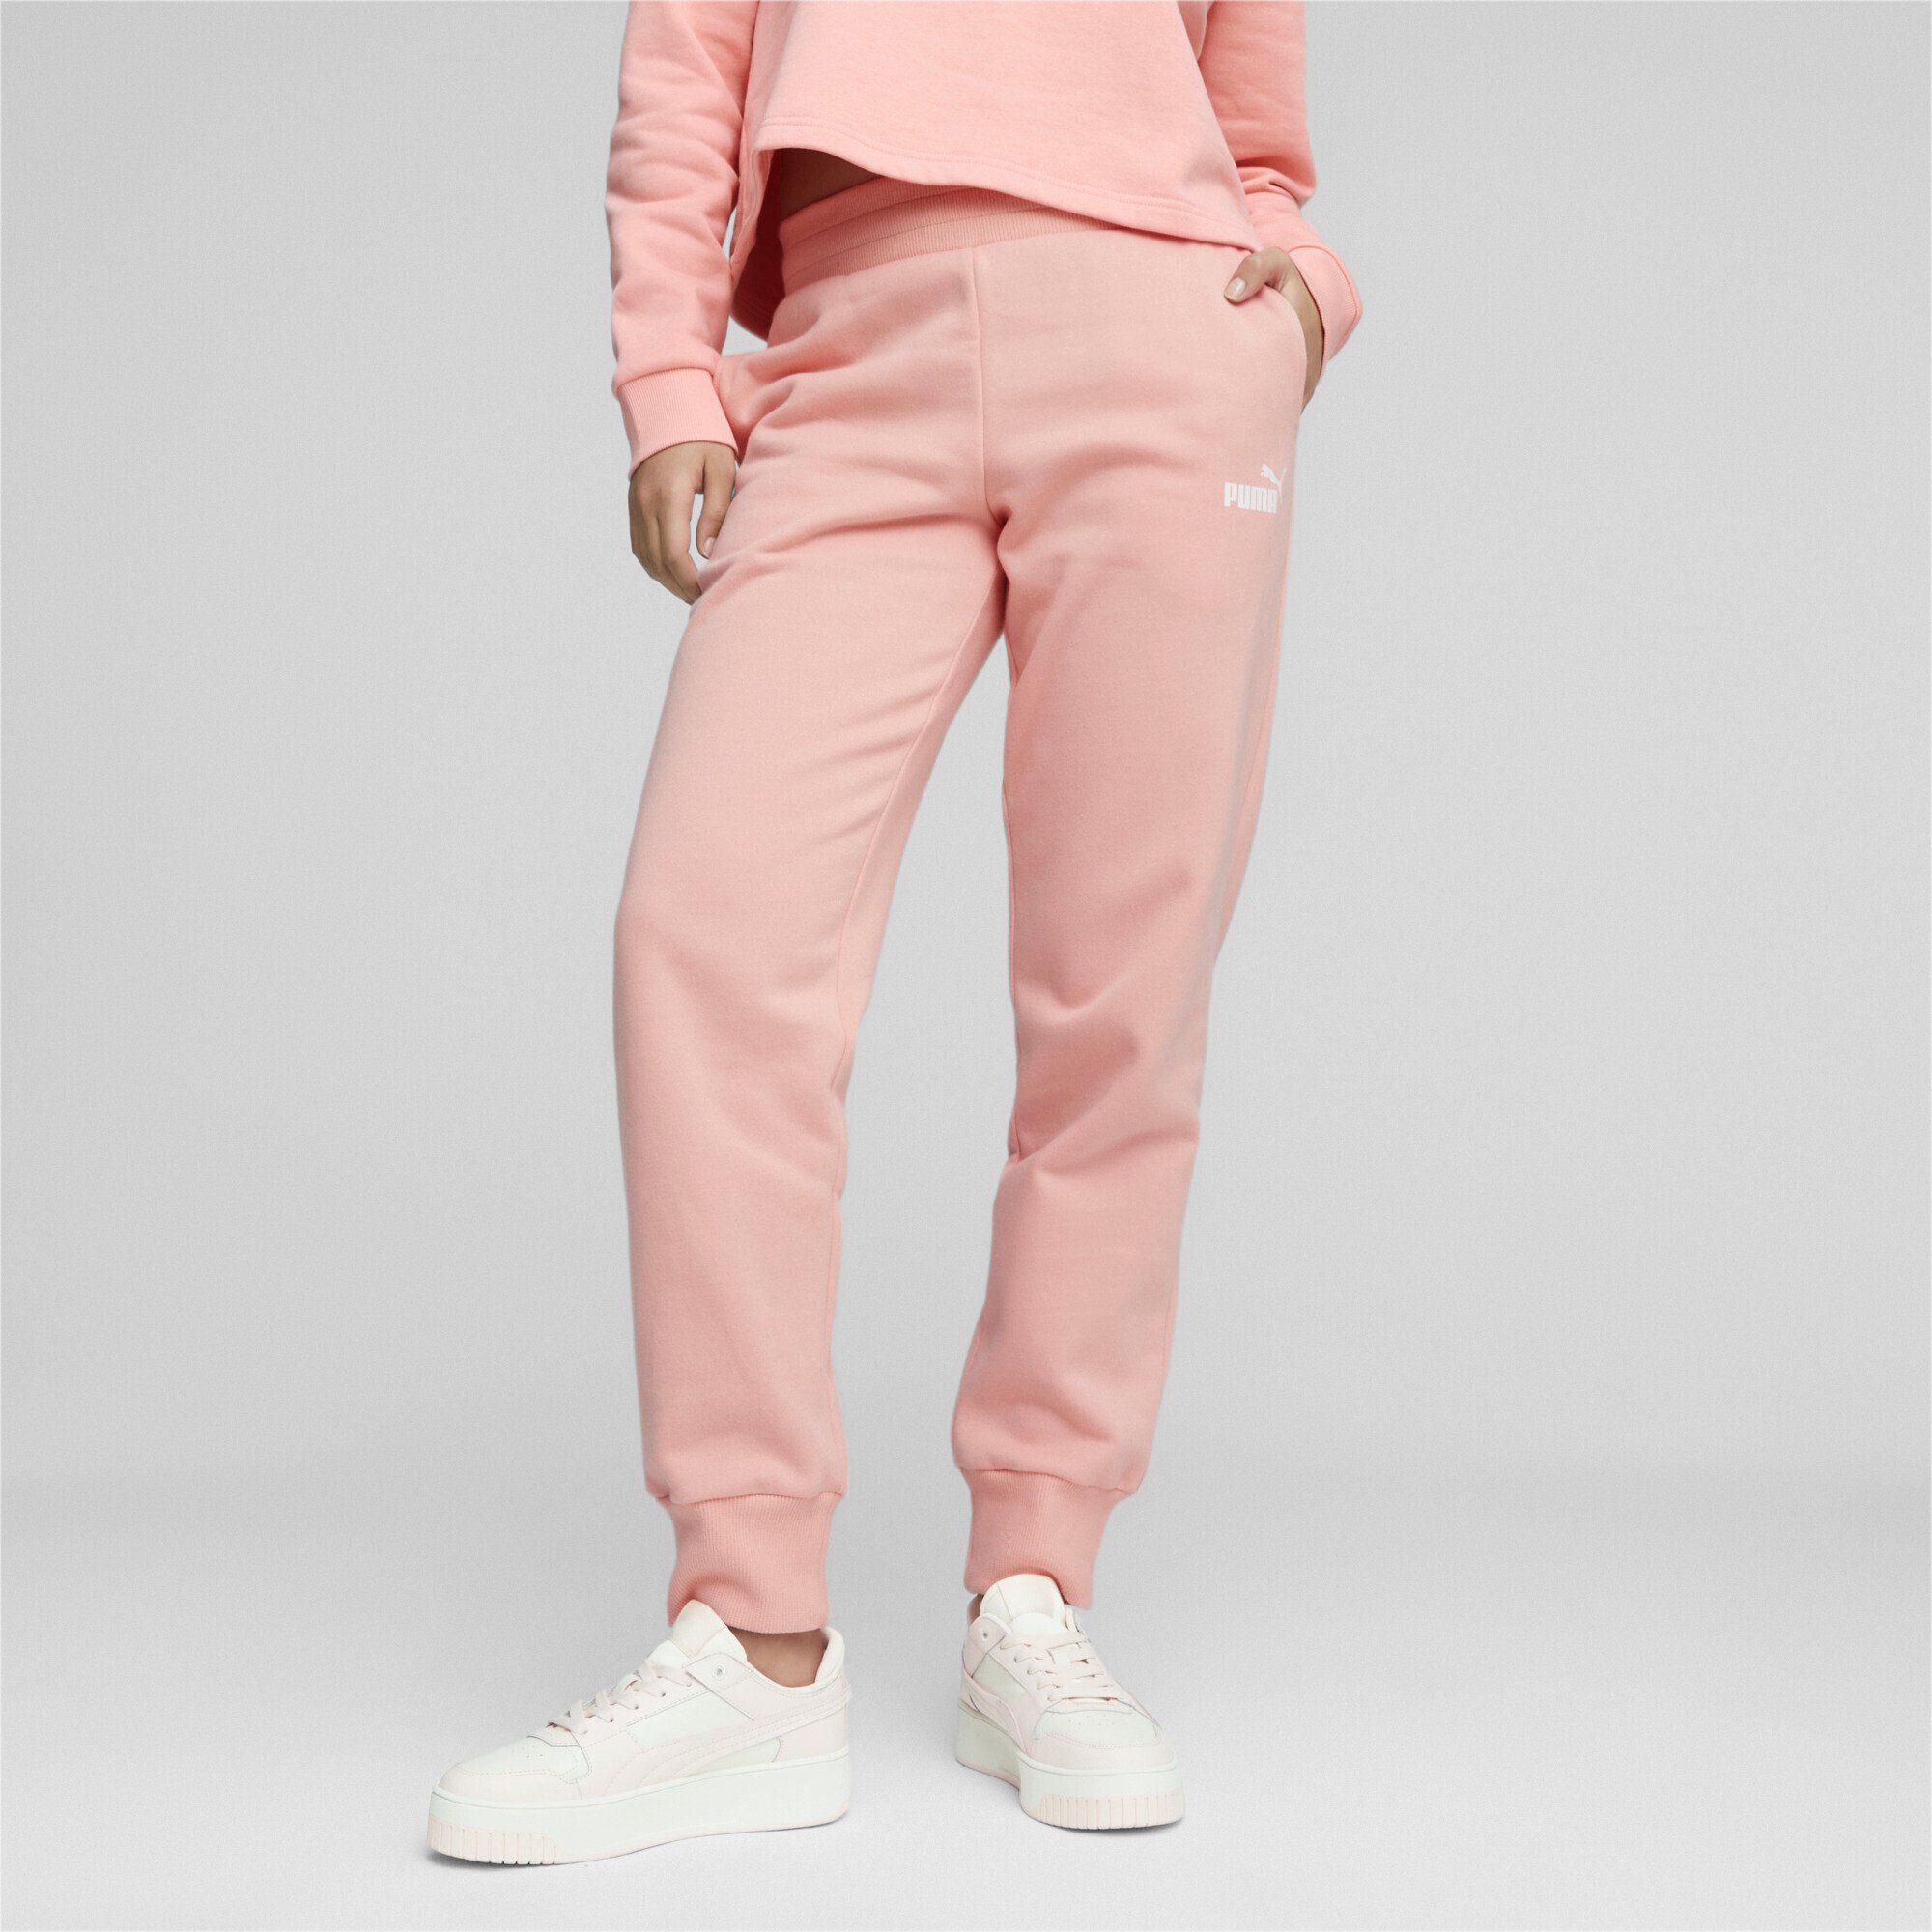 Essentials Pink Jogginghose PUMA Peach Smoothie Damen Sporthose